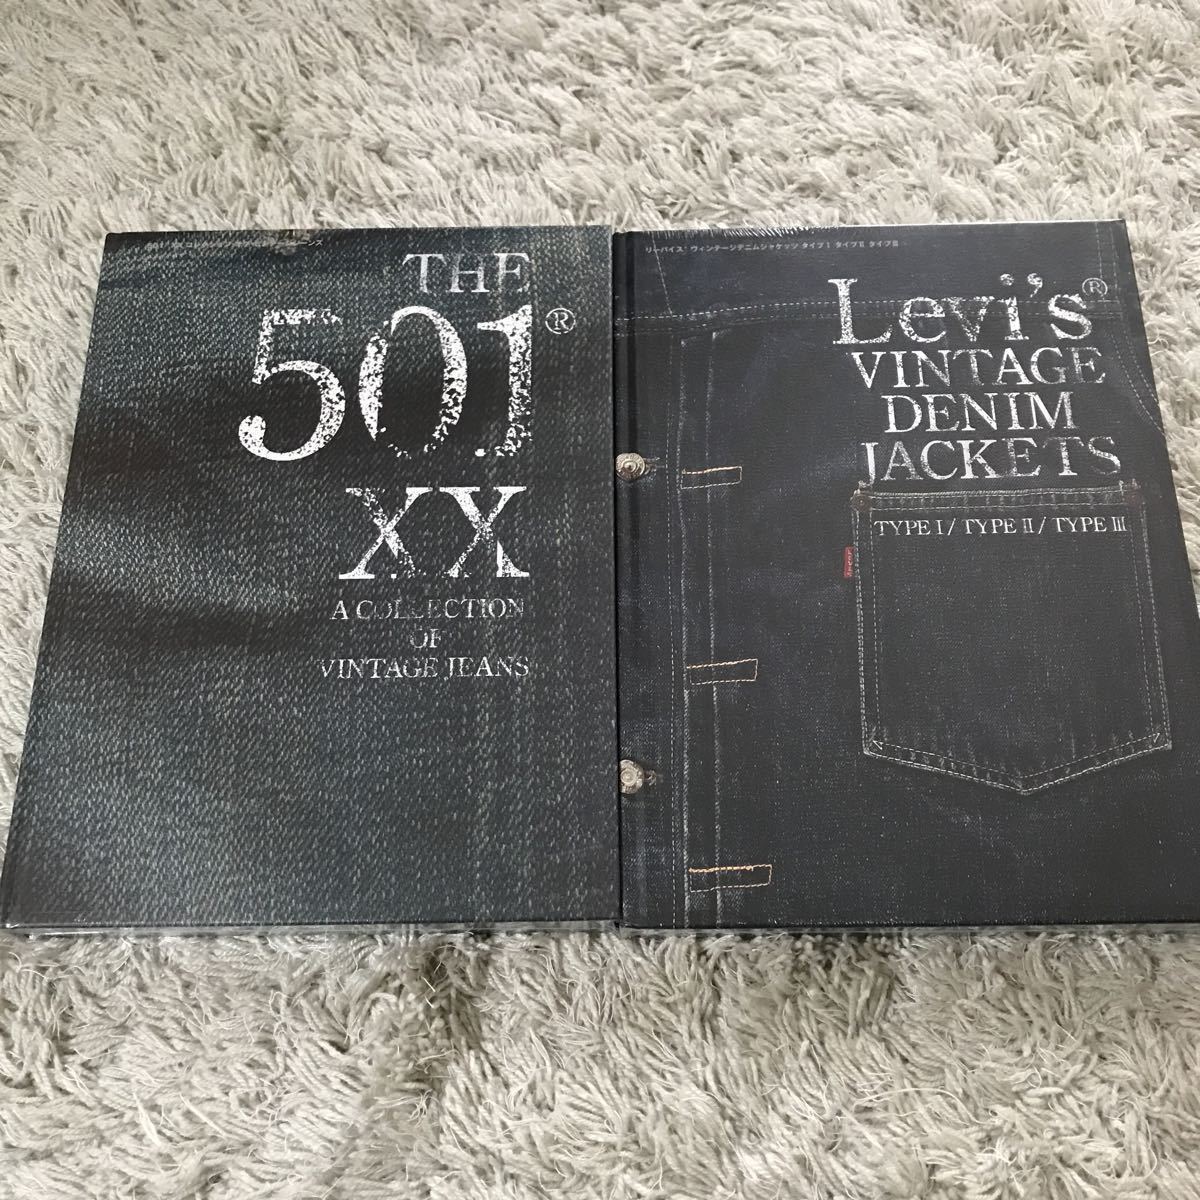 THE 501XX A COLLECTION OF VINTAGE JEANS & LEVI'S VINTAGE DENIM